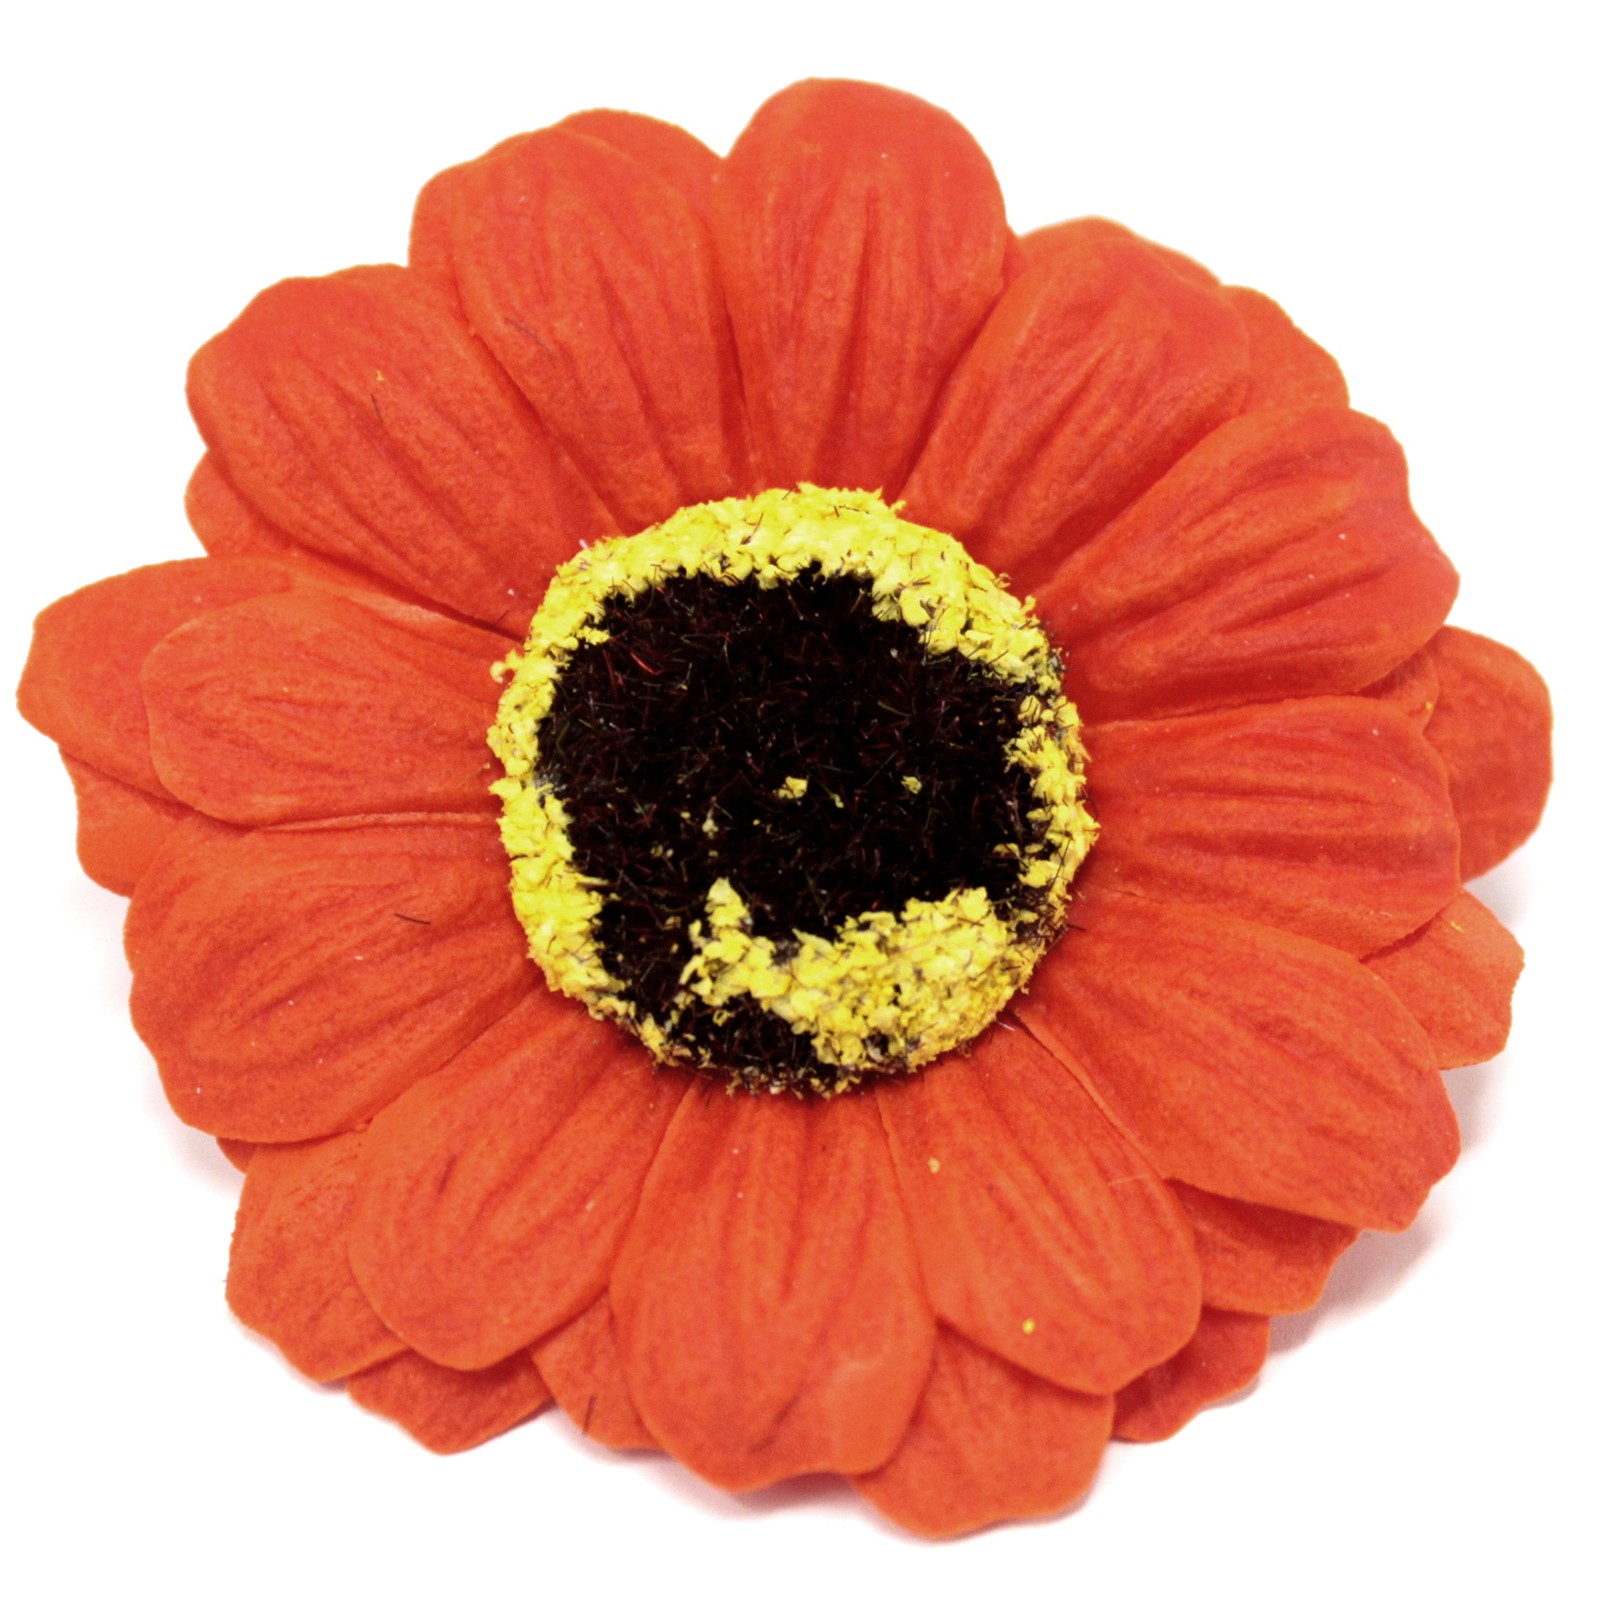 Mýdlové květy - Malé slunečnice - Oranžové (50 ks)